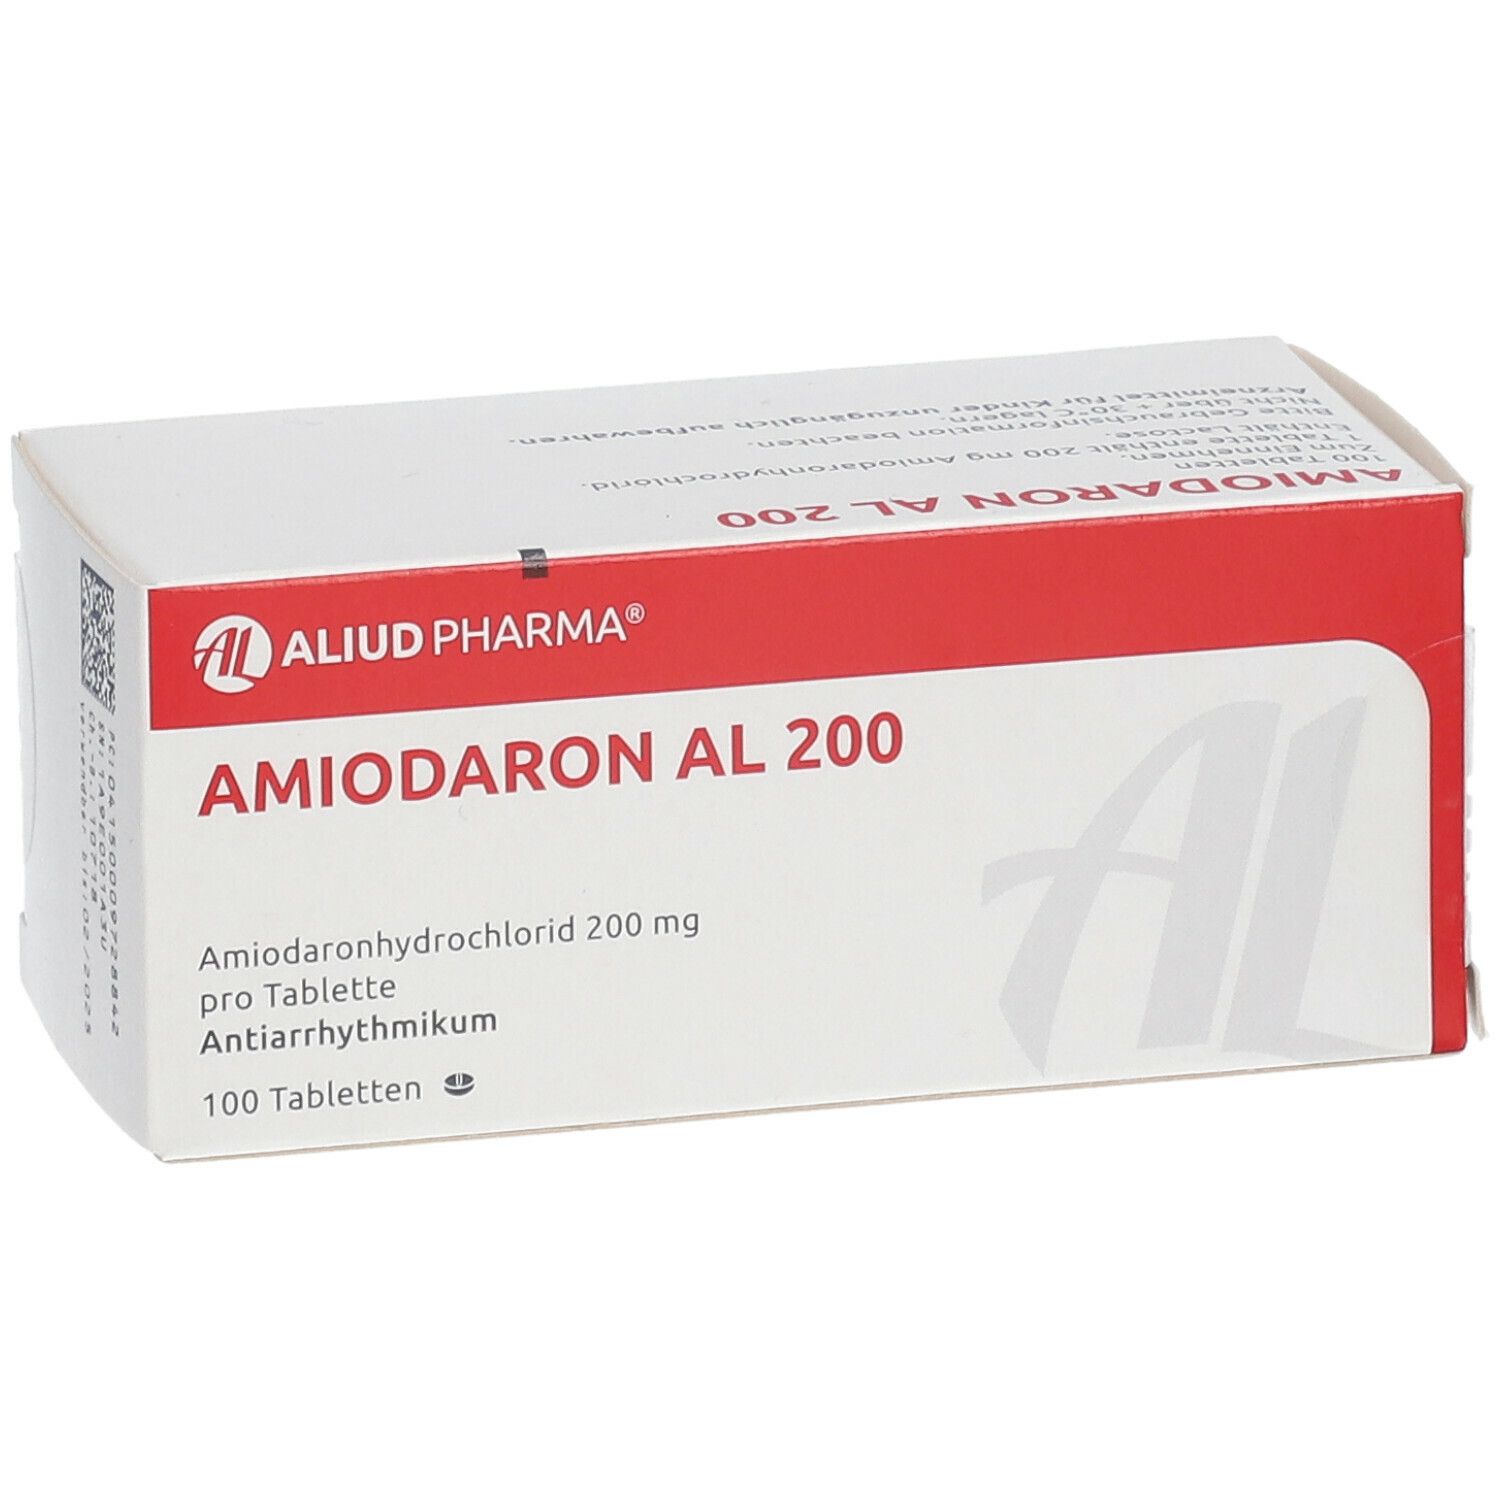 Amiodaron AL 200